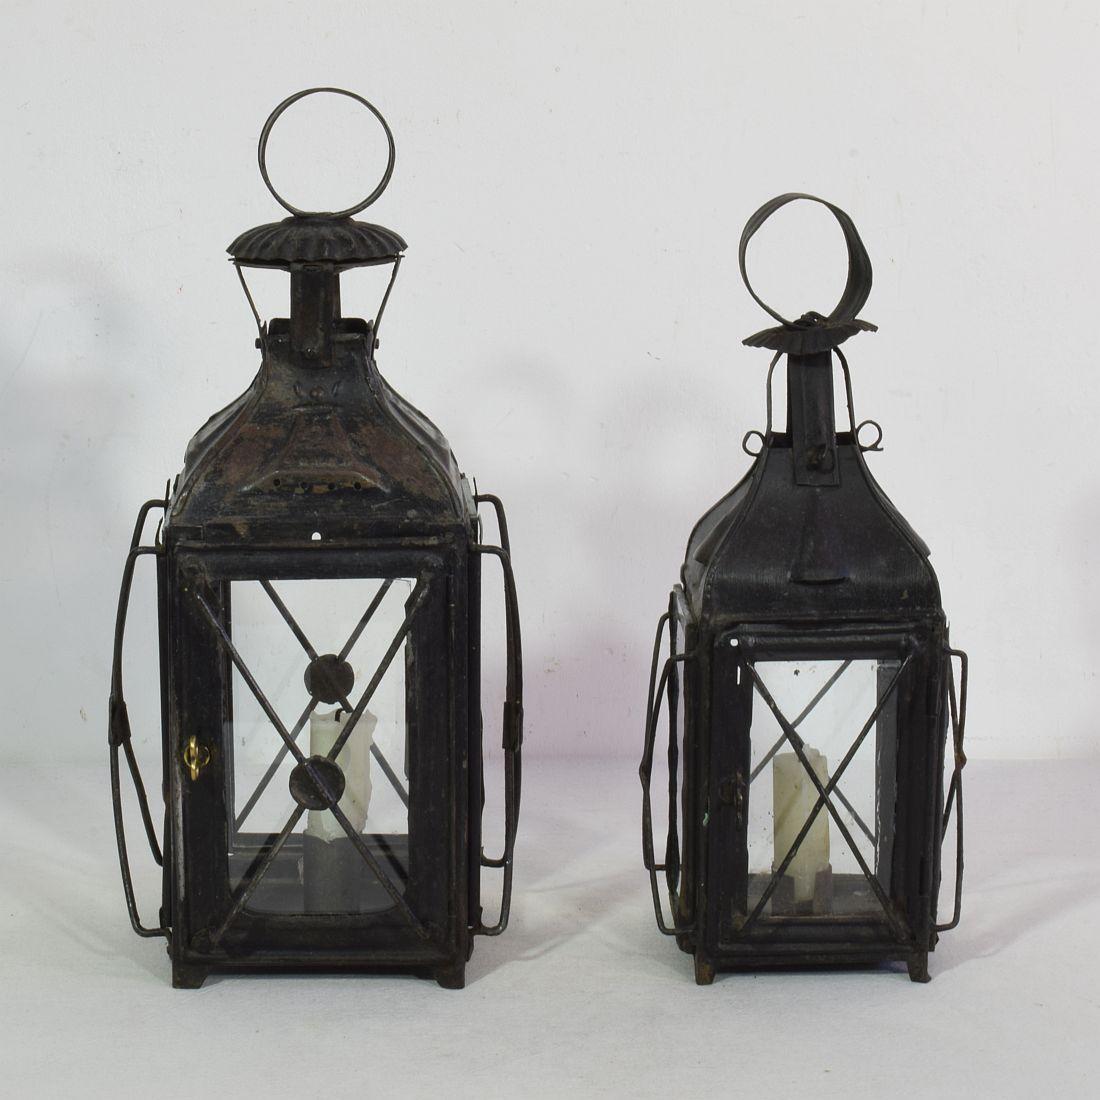 Belle paire de lanternes en métal, France, vers 1850-1900.
Réparations usées et anciennes (verre remplacé une fois)
Mesures : H:28-32cm  W:12-15cm D:12-15cm 
Mesure ci-dessous de la plus grande lanterne.